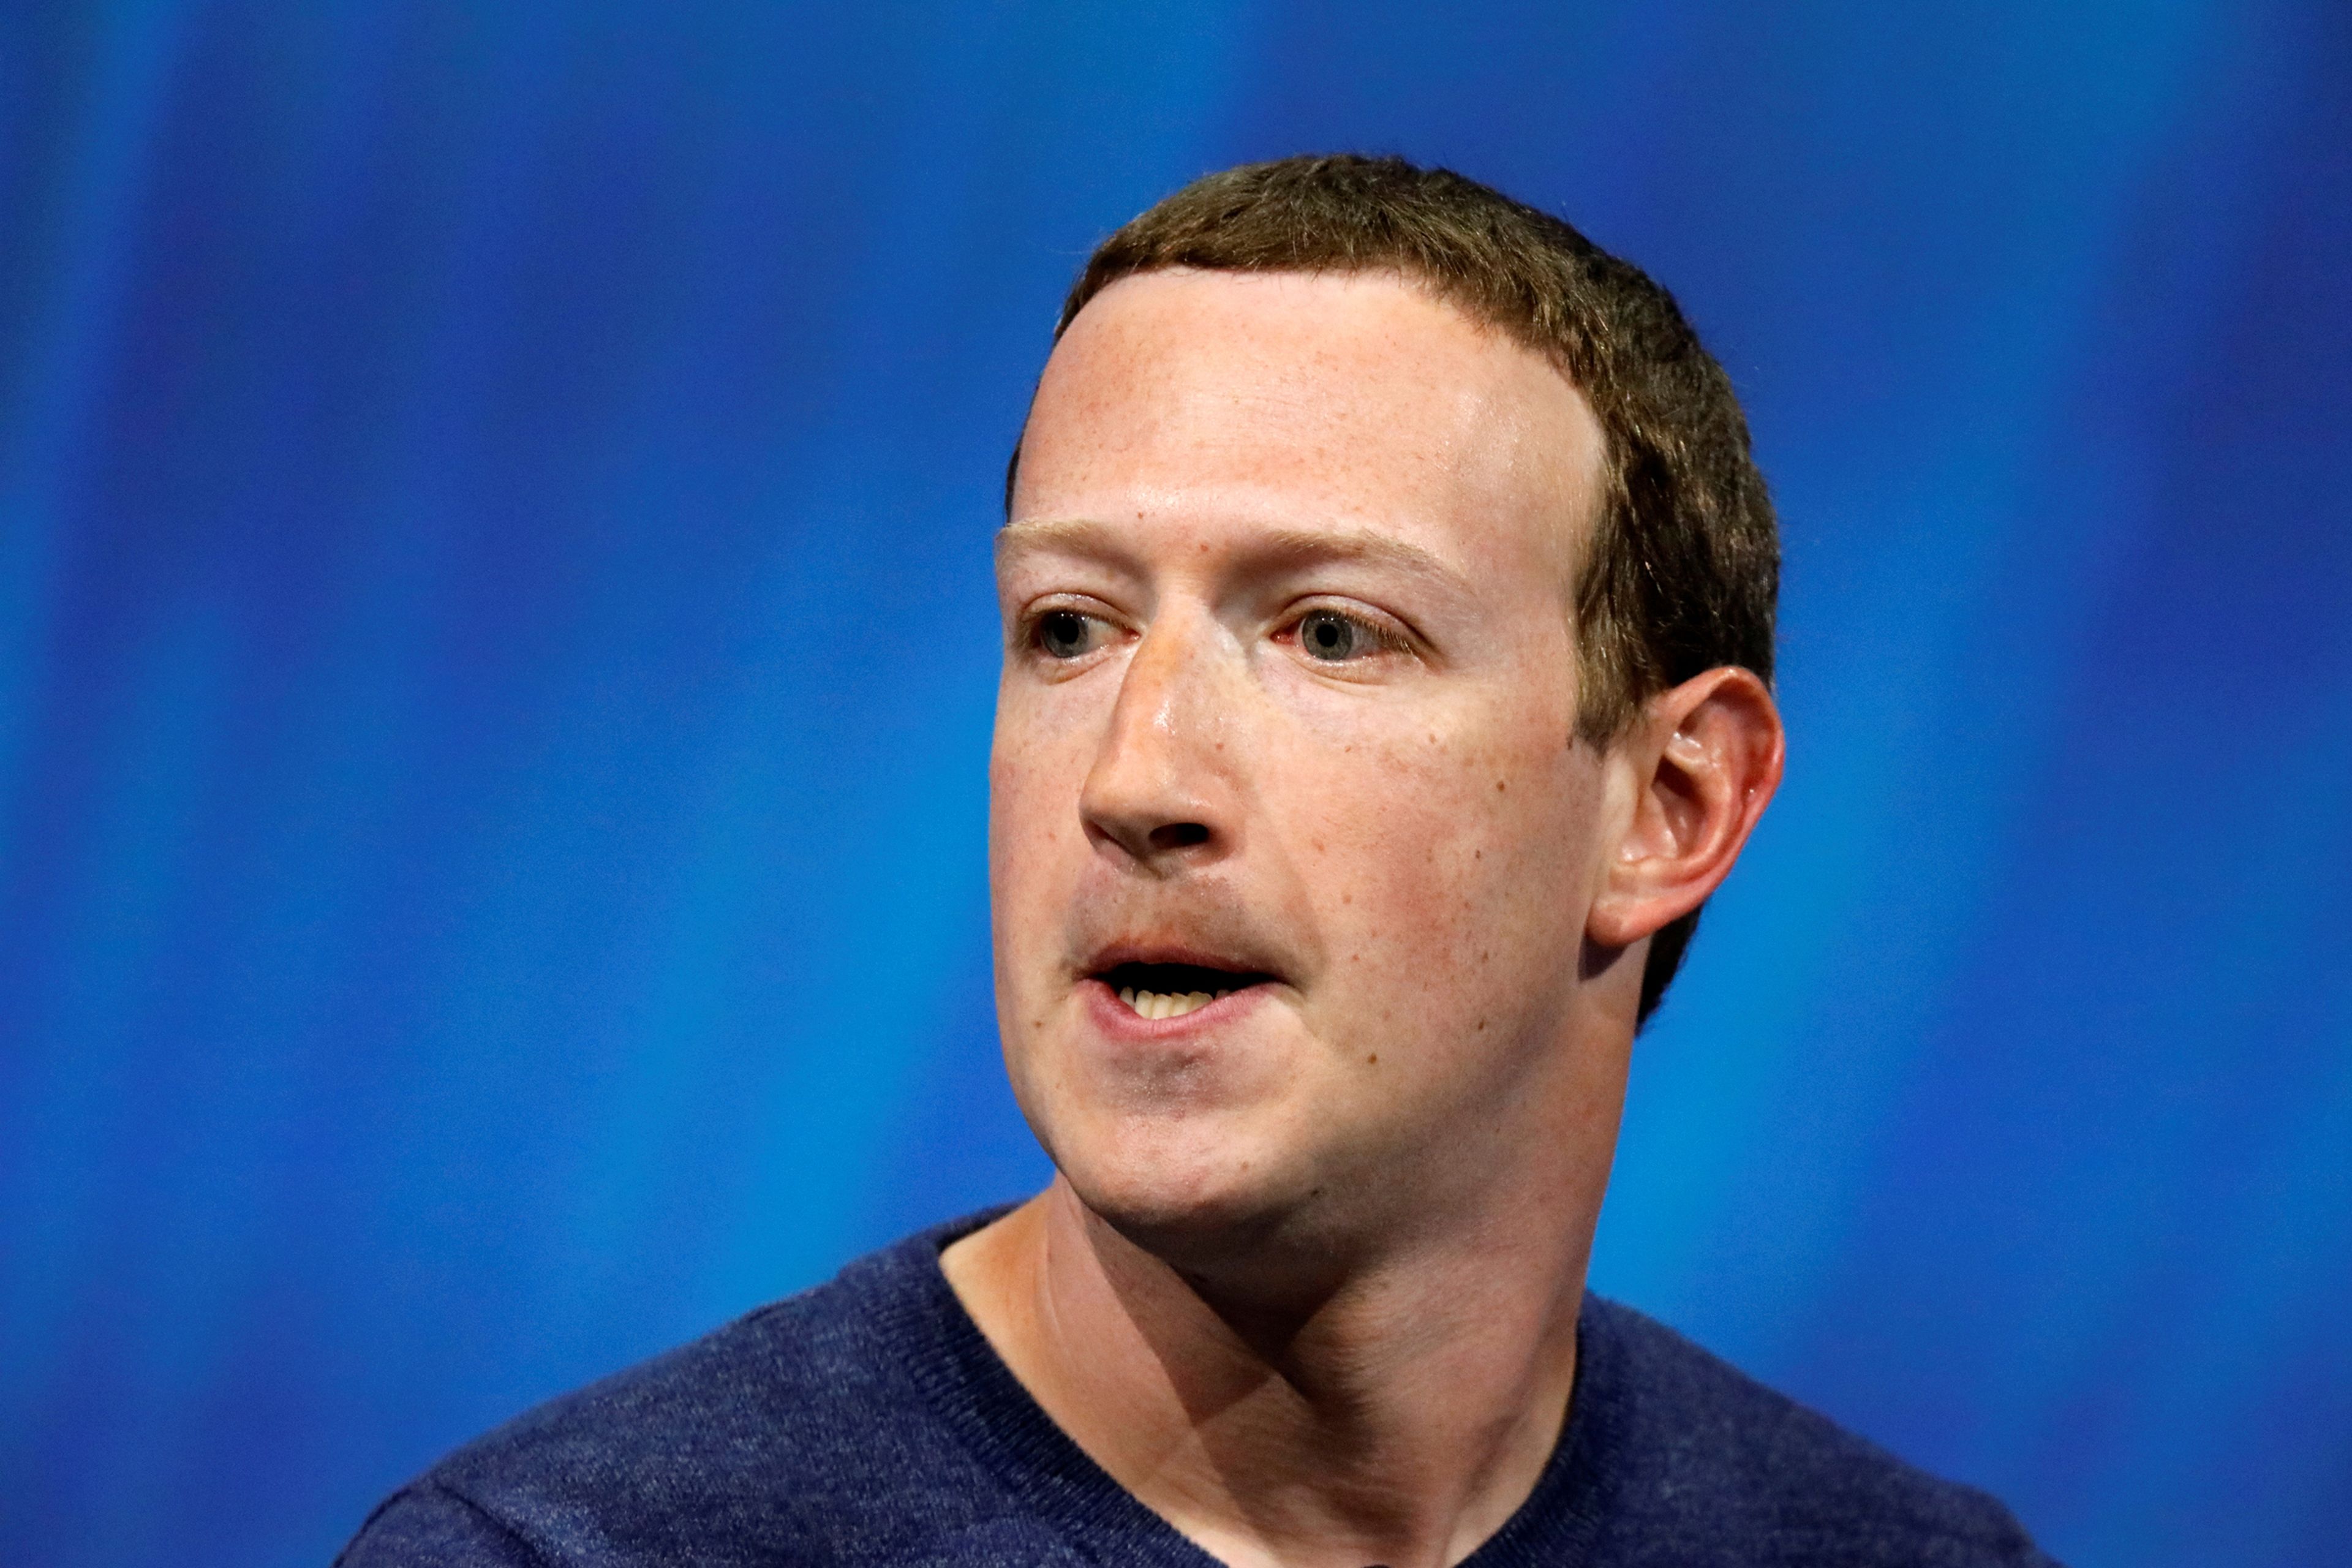 El CEO de Facebook, Mark Zuckerberg, durante un evento en París.